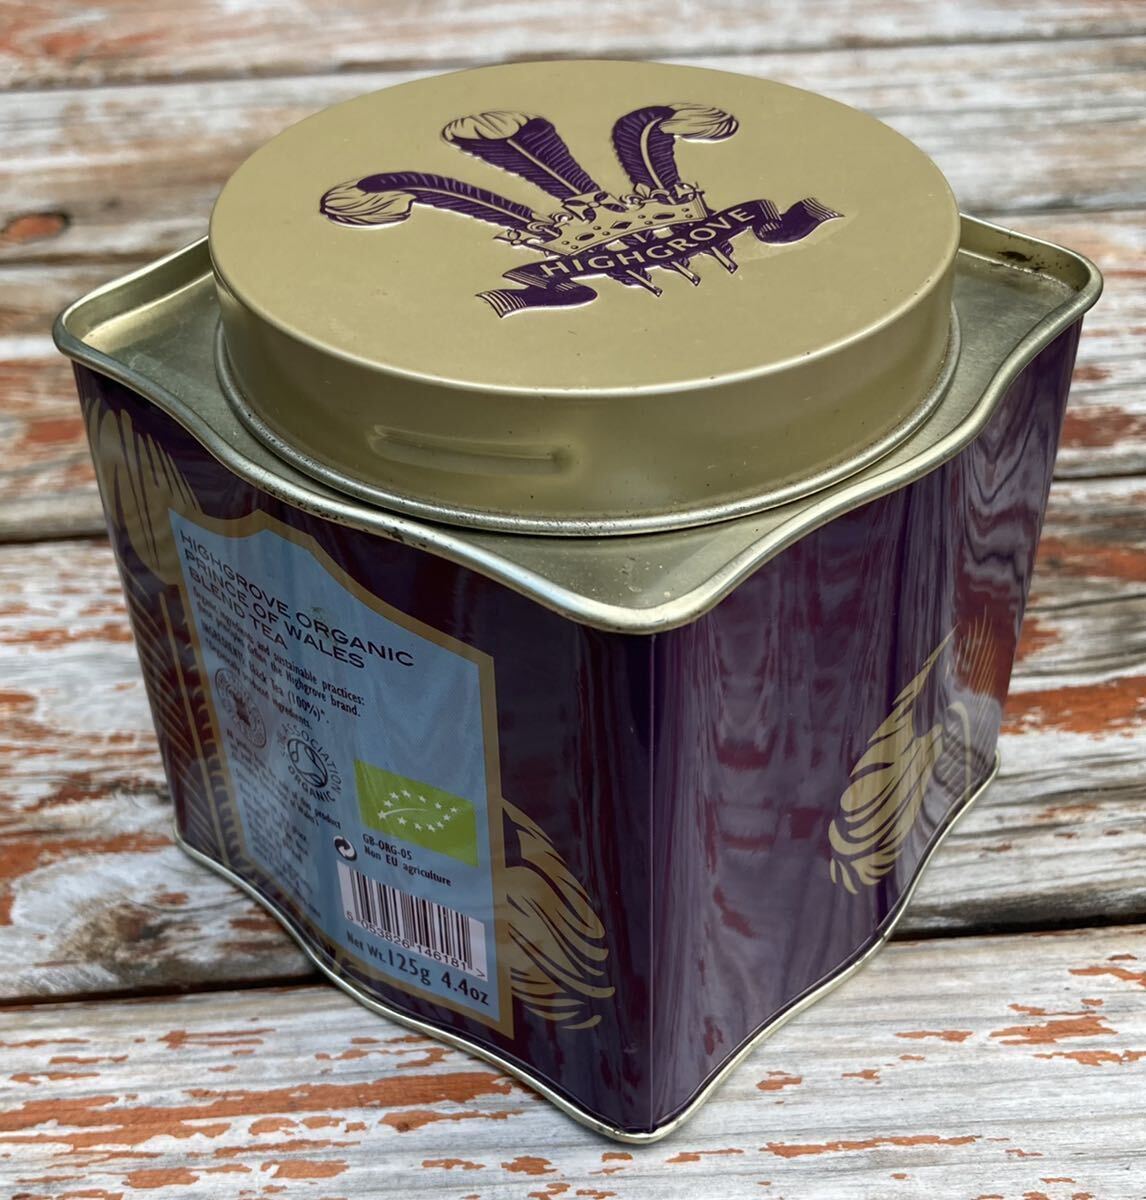 英国王室 チャールズ国王の紅茶ブランド ハイグローブ プリンス オブ ウェールズ ブレンド 紅茶の空き缶 送料無料_画像2